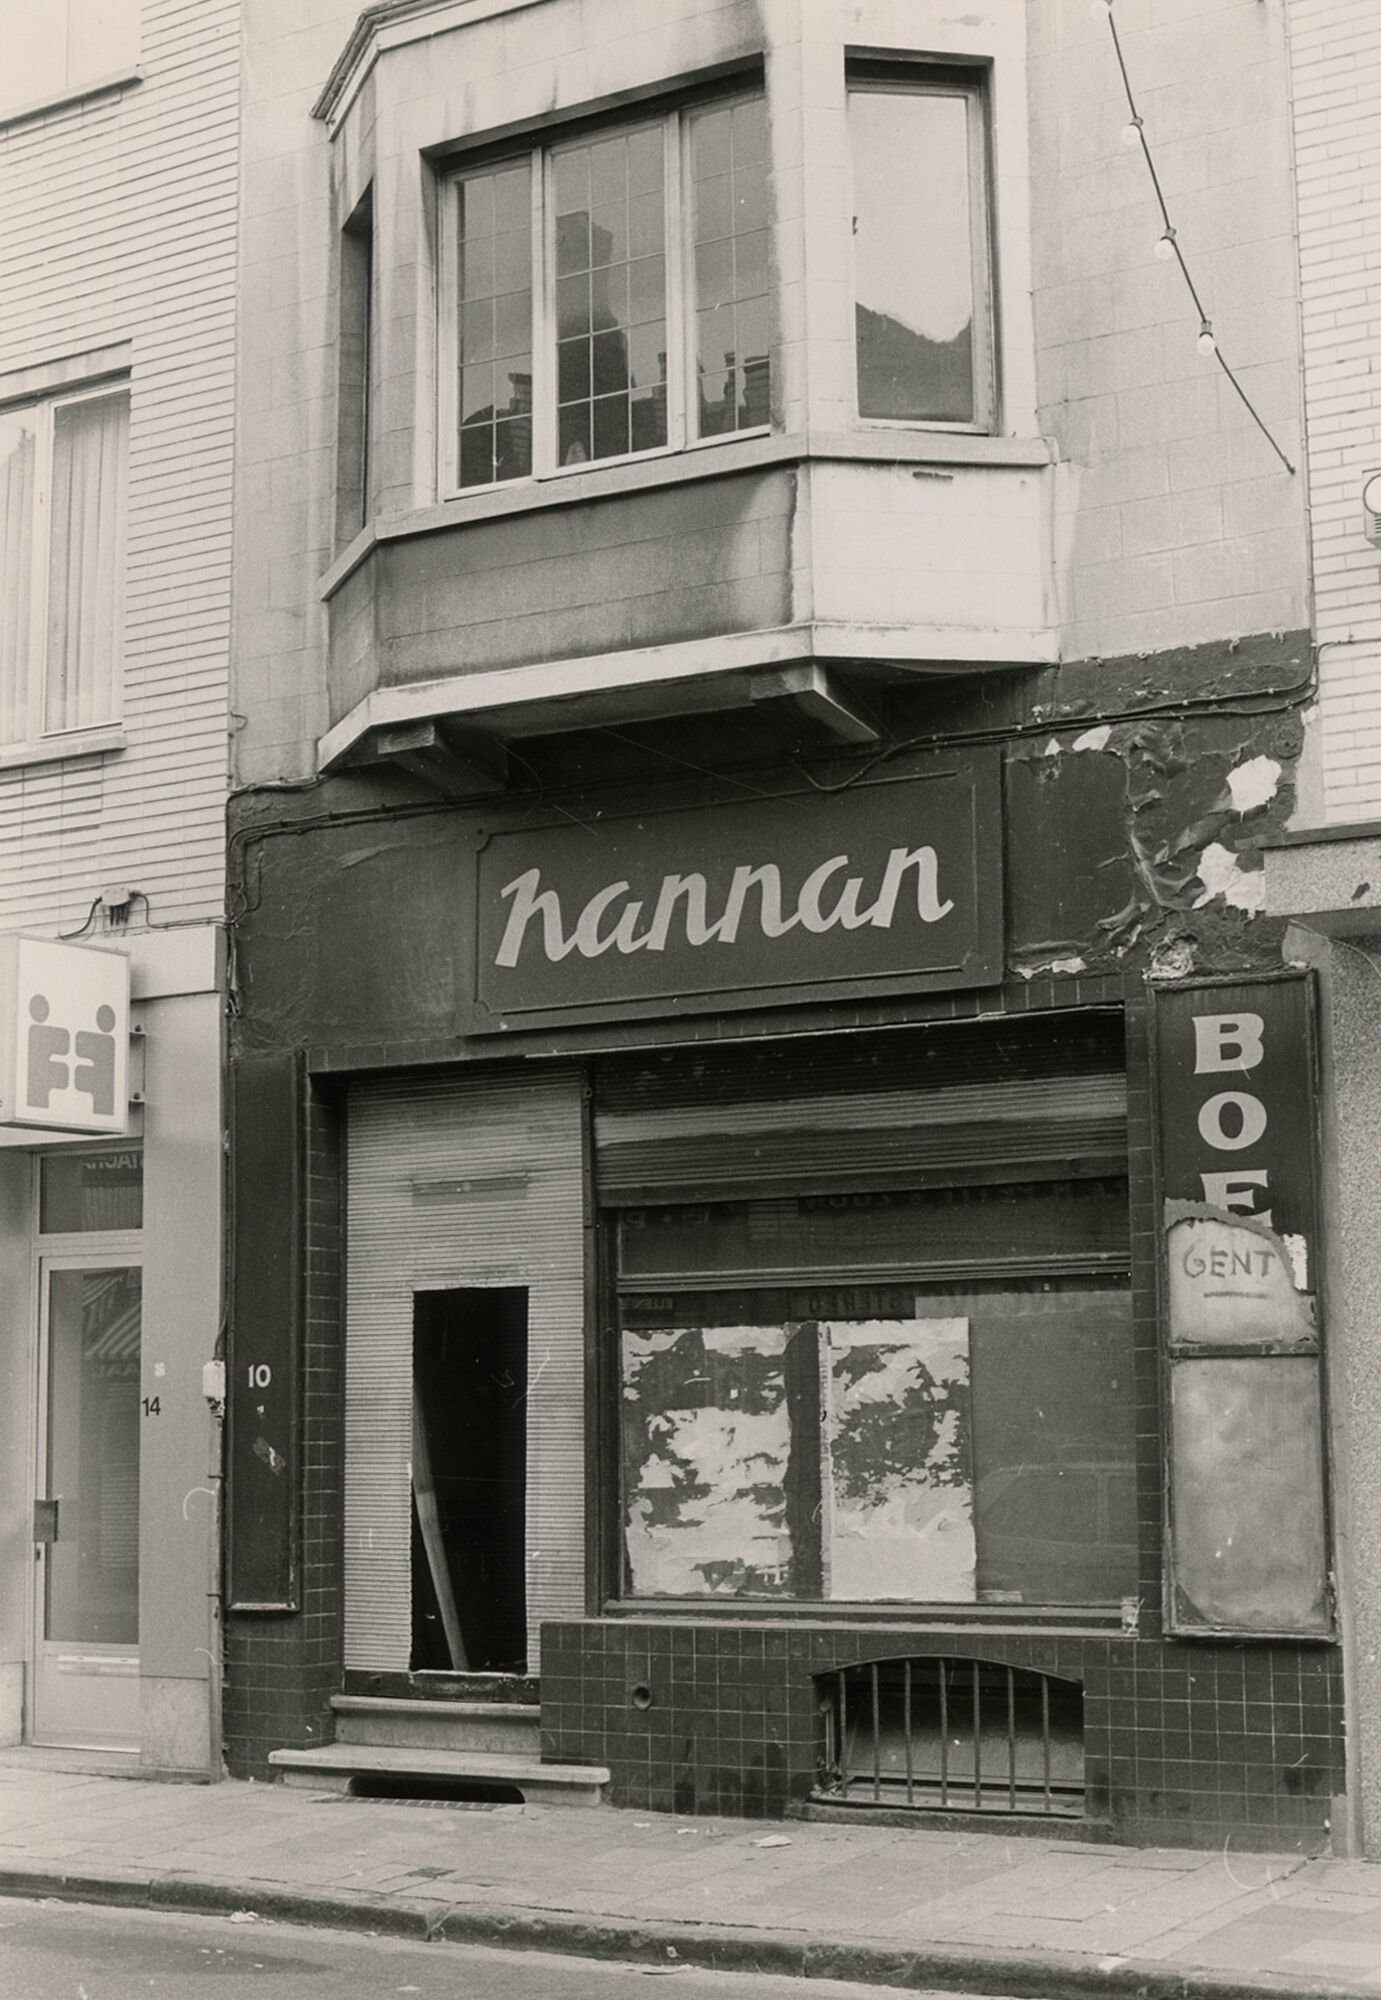 Gevel van leegstaand winkelpand Nannan in Gent